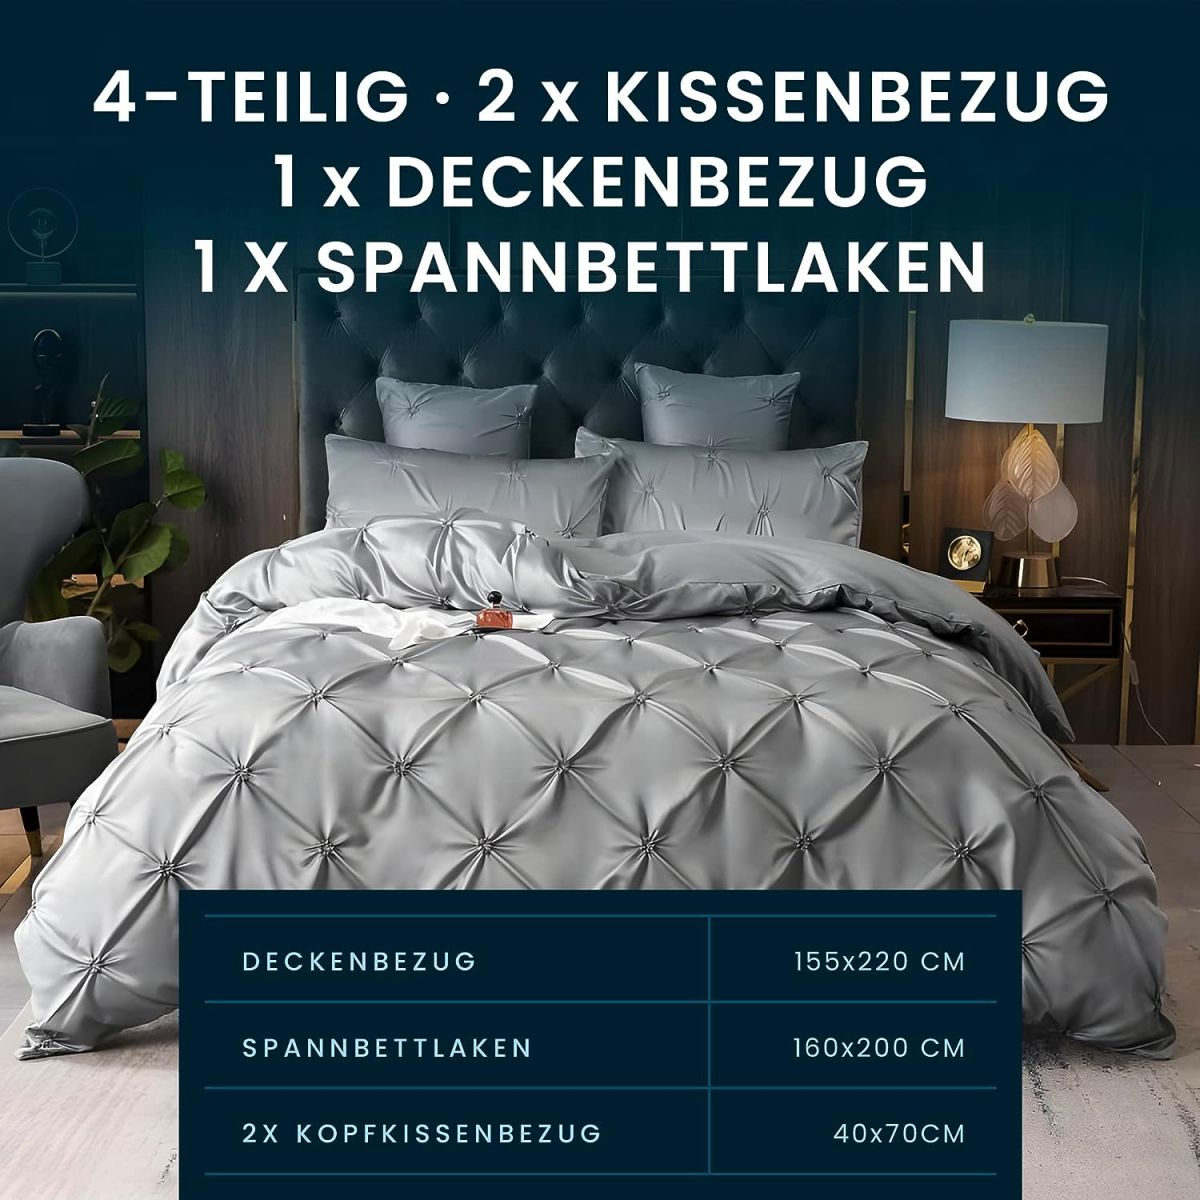 Комплект постельного белья Pierre Mond из 4 предметов 155х220 см, 1 простыня, 1 пододеяльник, 2 наволочки 40×80 см, серый цвет